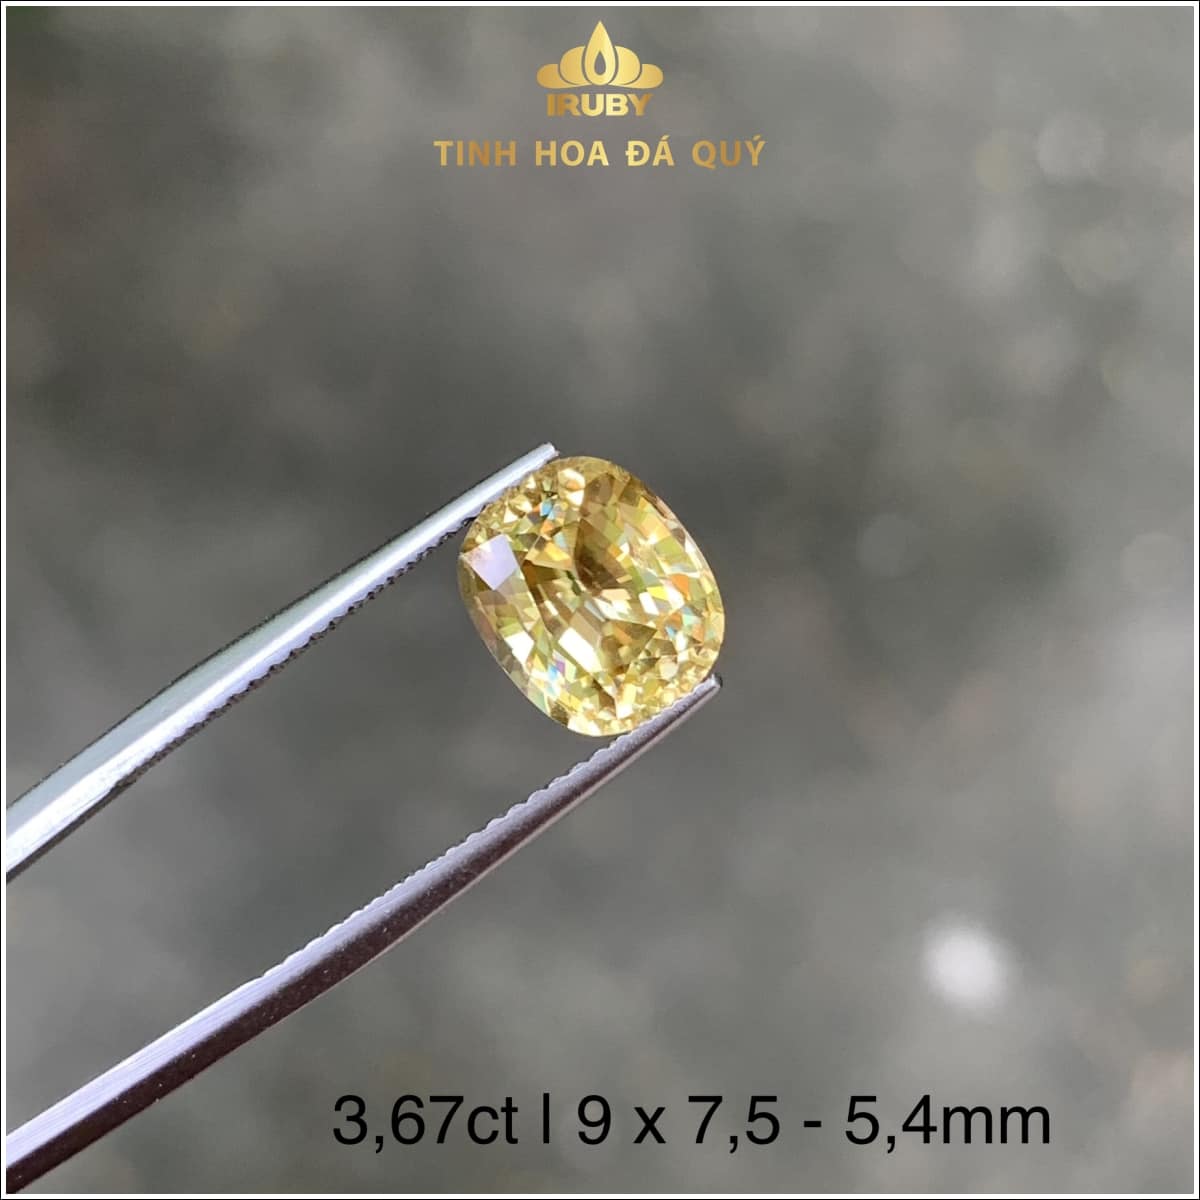 Viên Zircon vàng tự nhiên 3,67ct IRZC14 - 239367 hình ảnh 3